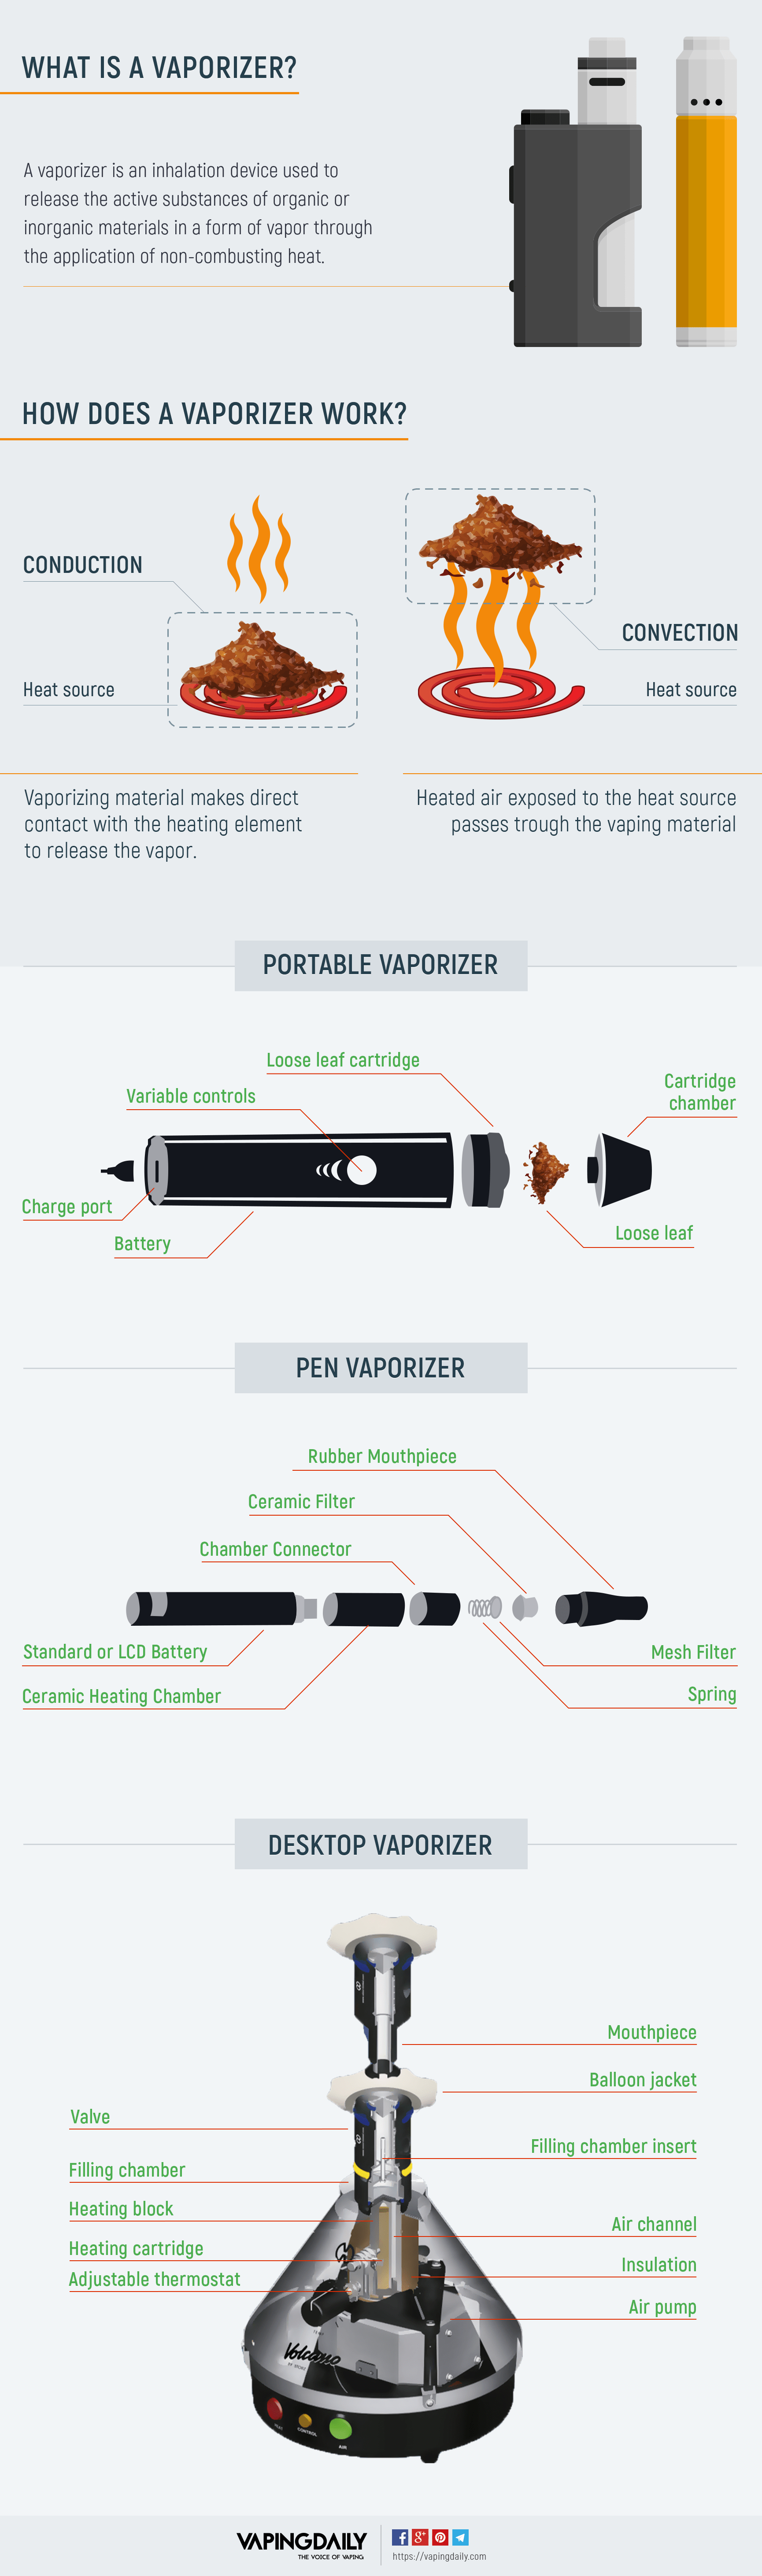 Portable Vaporizer Comparison Chart